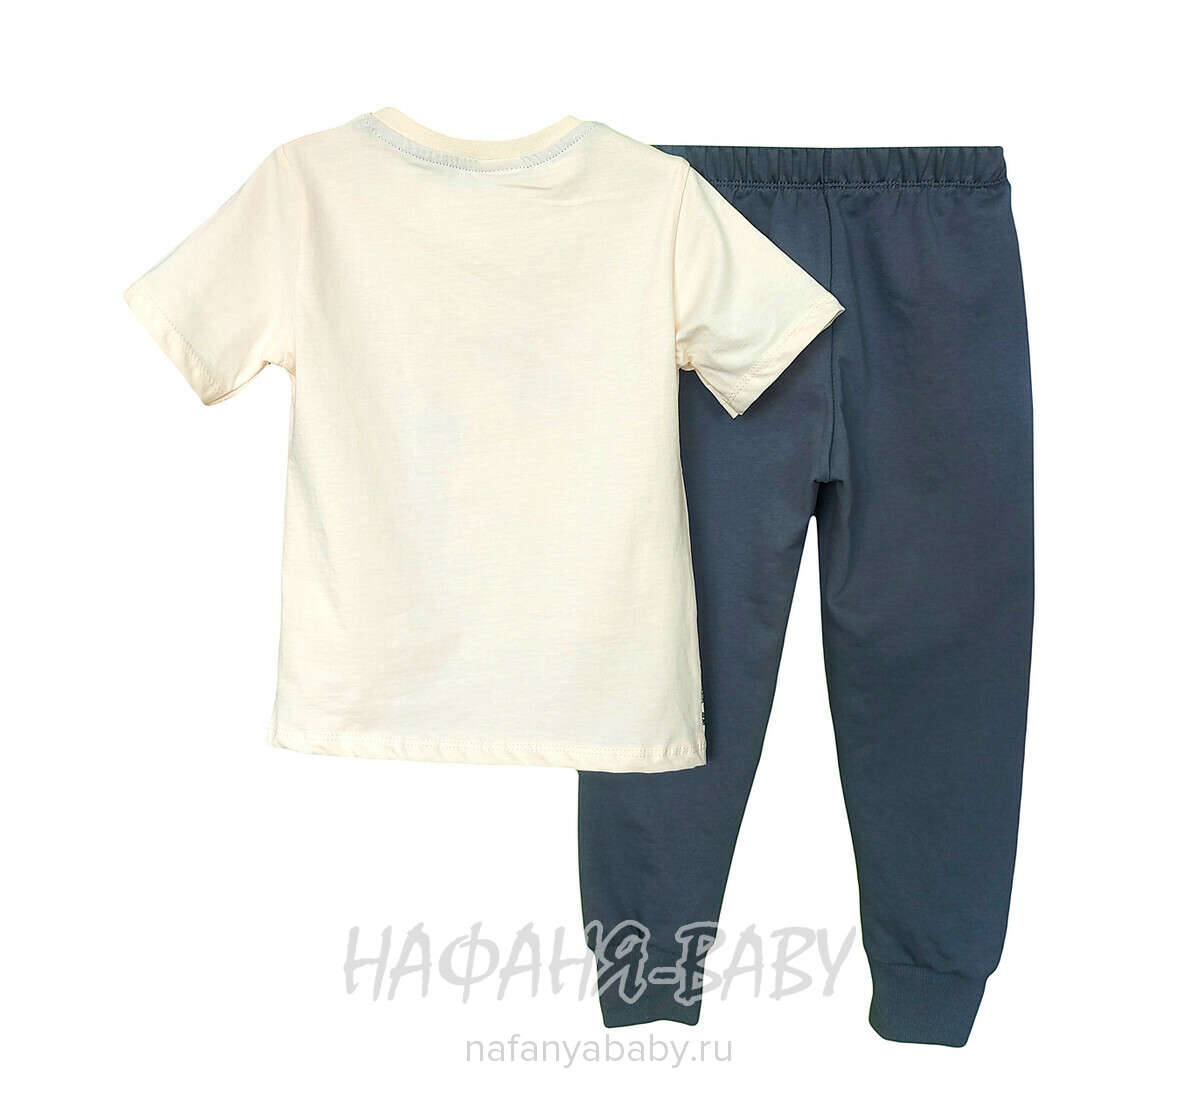 Детский костюм (футболка + брюки) SERENAD арт. 6215 от 4 до 9 лет, цвет бежевый с серым, оптом Турция